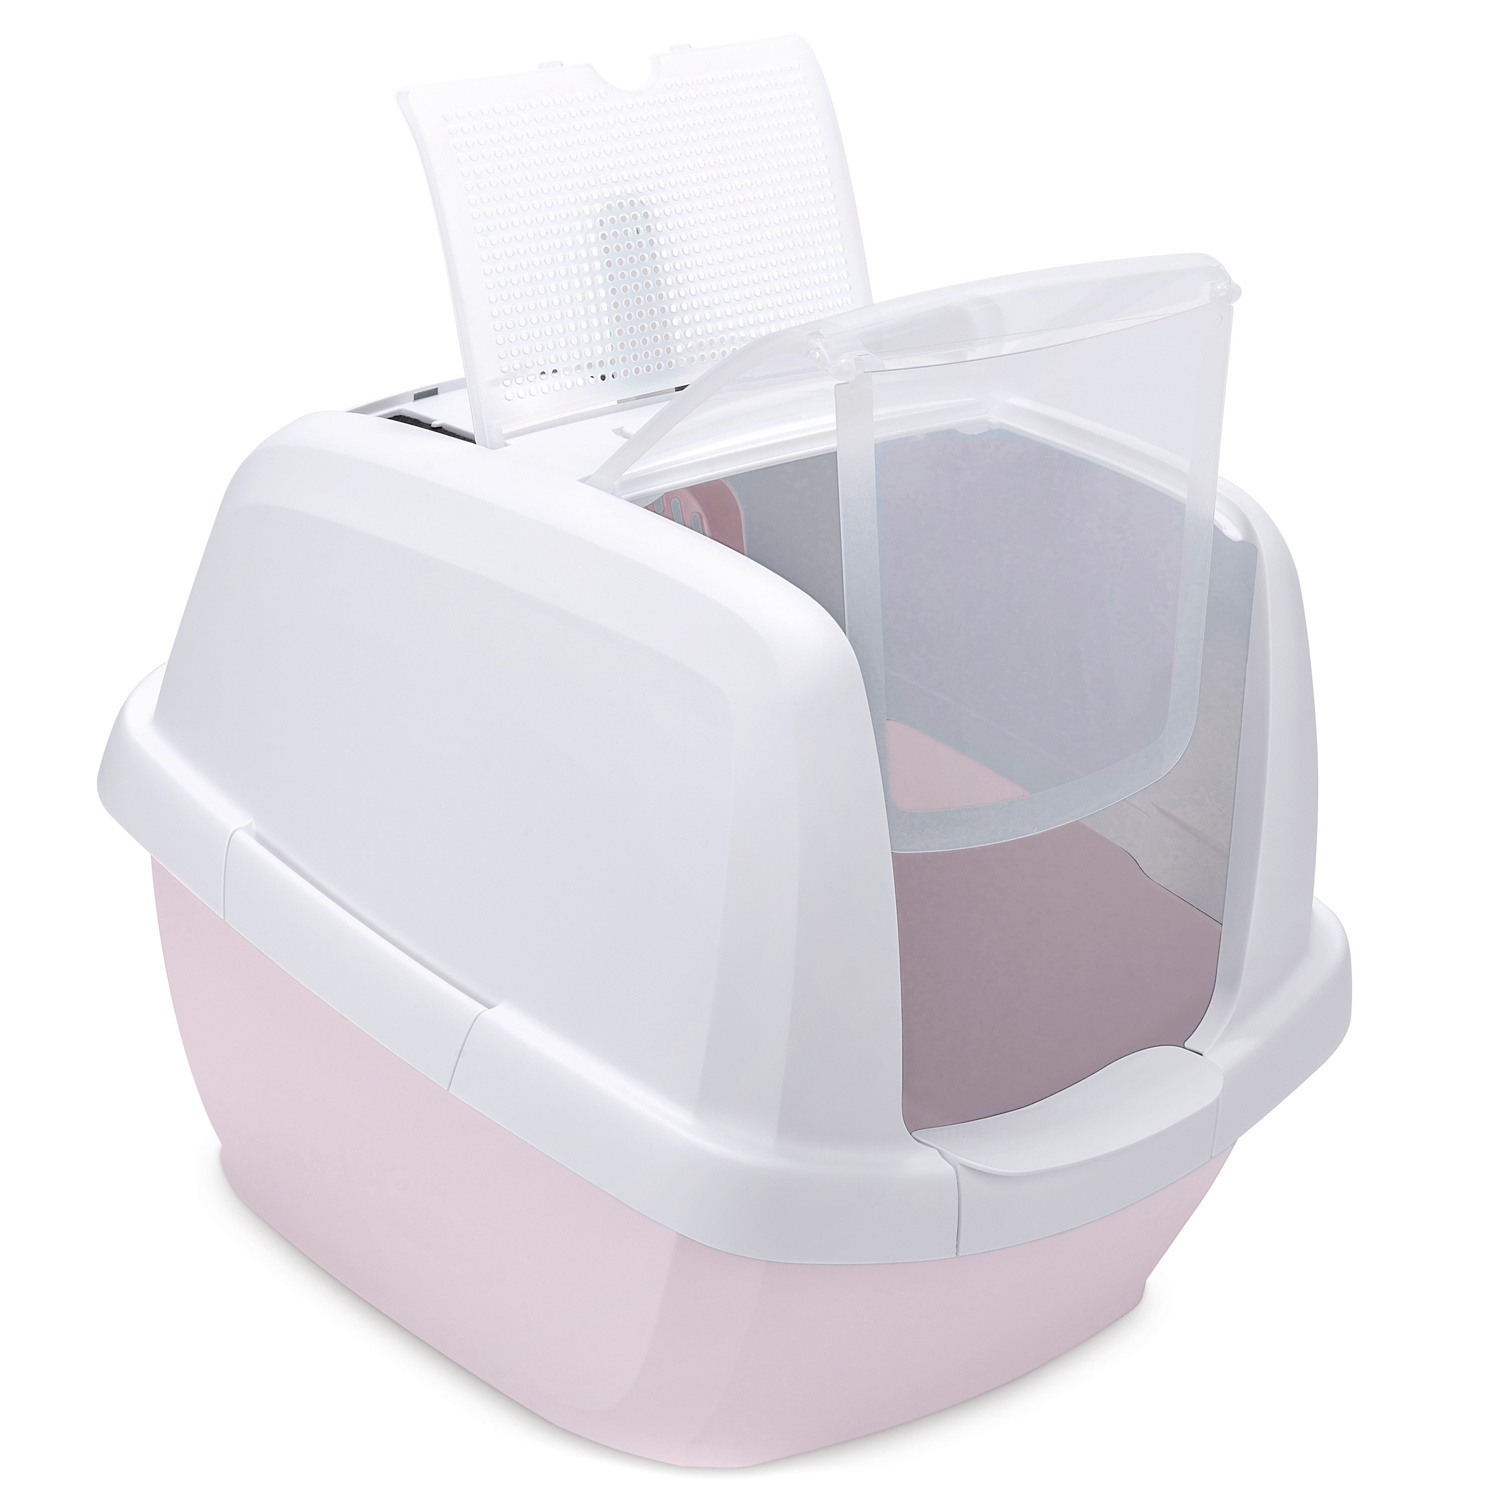 IMAC IMAC био-туалет для кошек , белый/нежно-розовый (2,85 кг) imac imac био туалет для кошек белый нежно розовый 2 85 кг